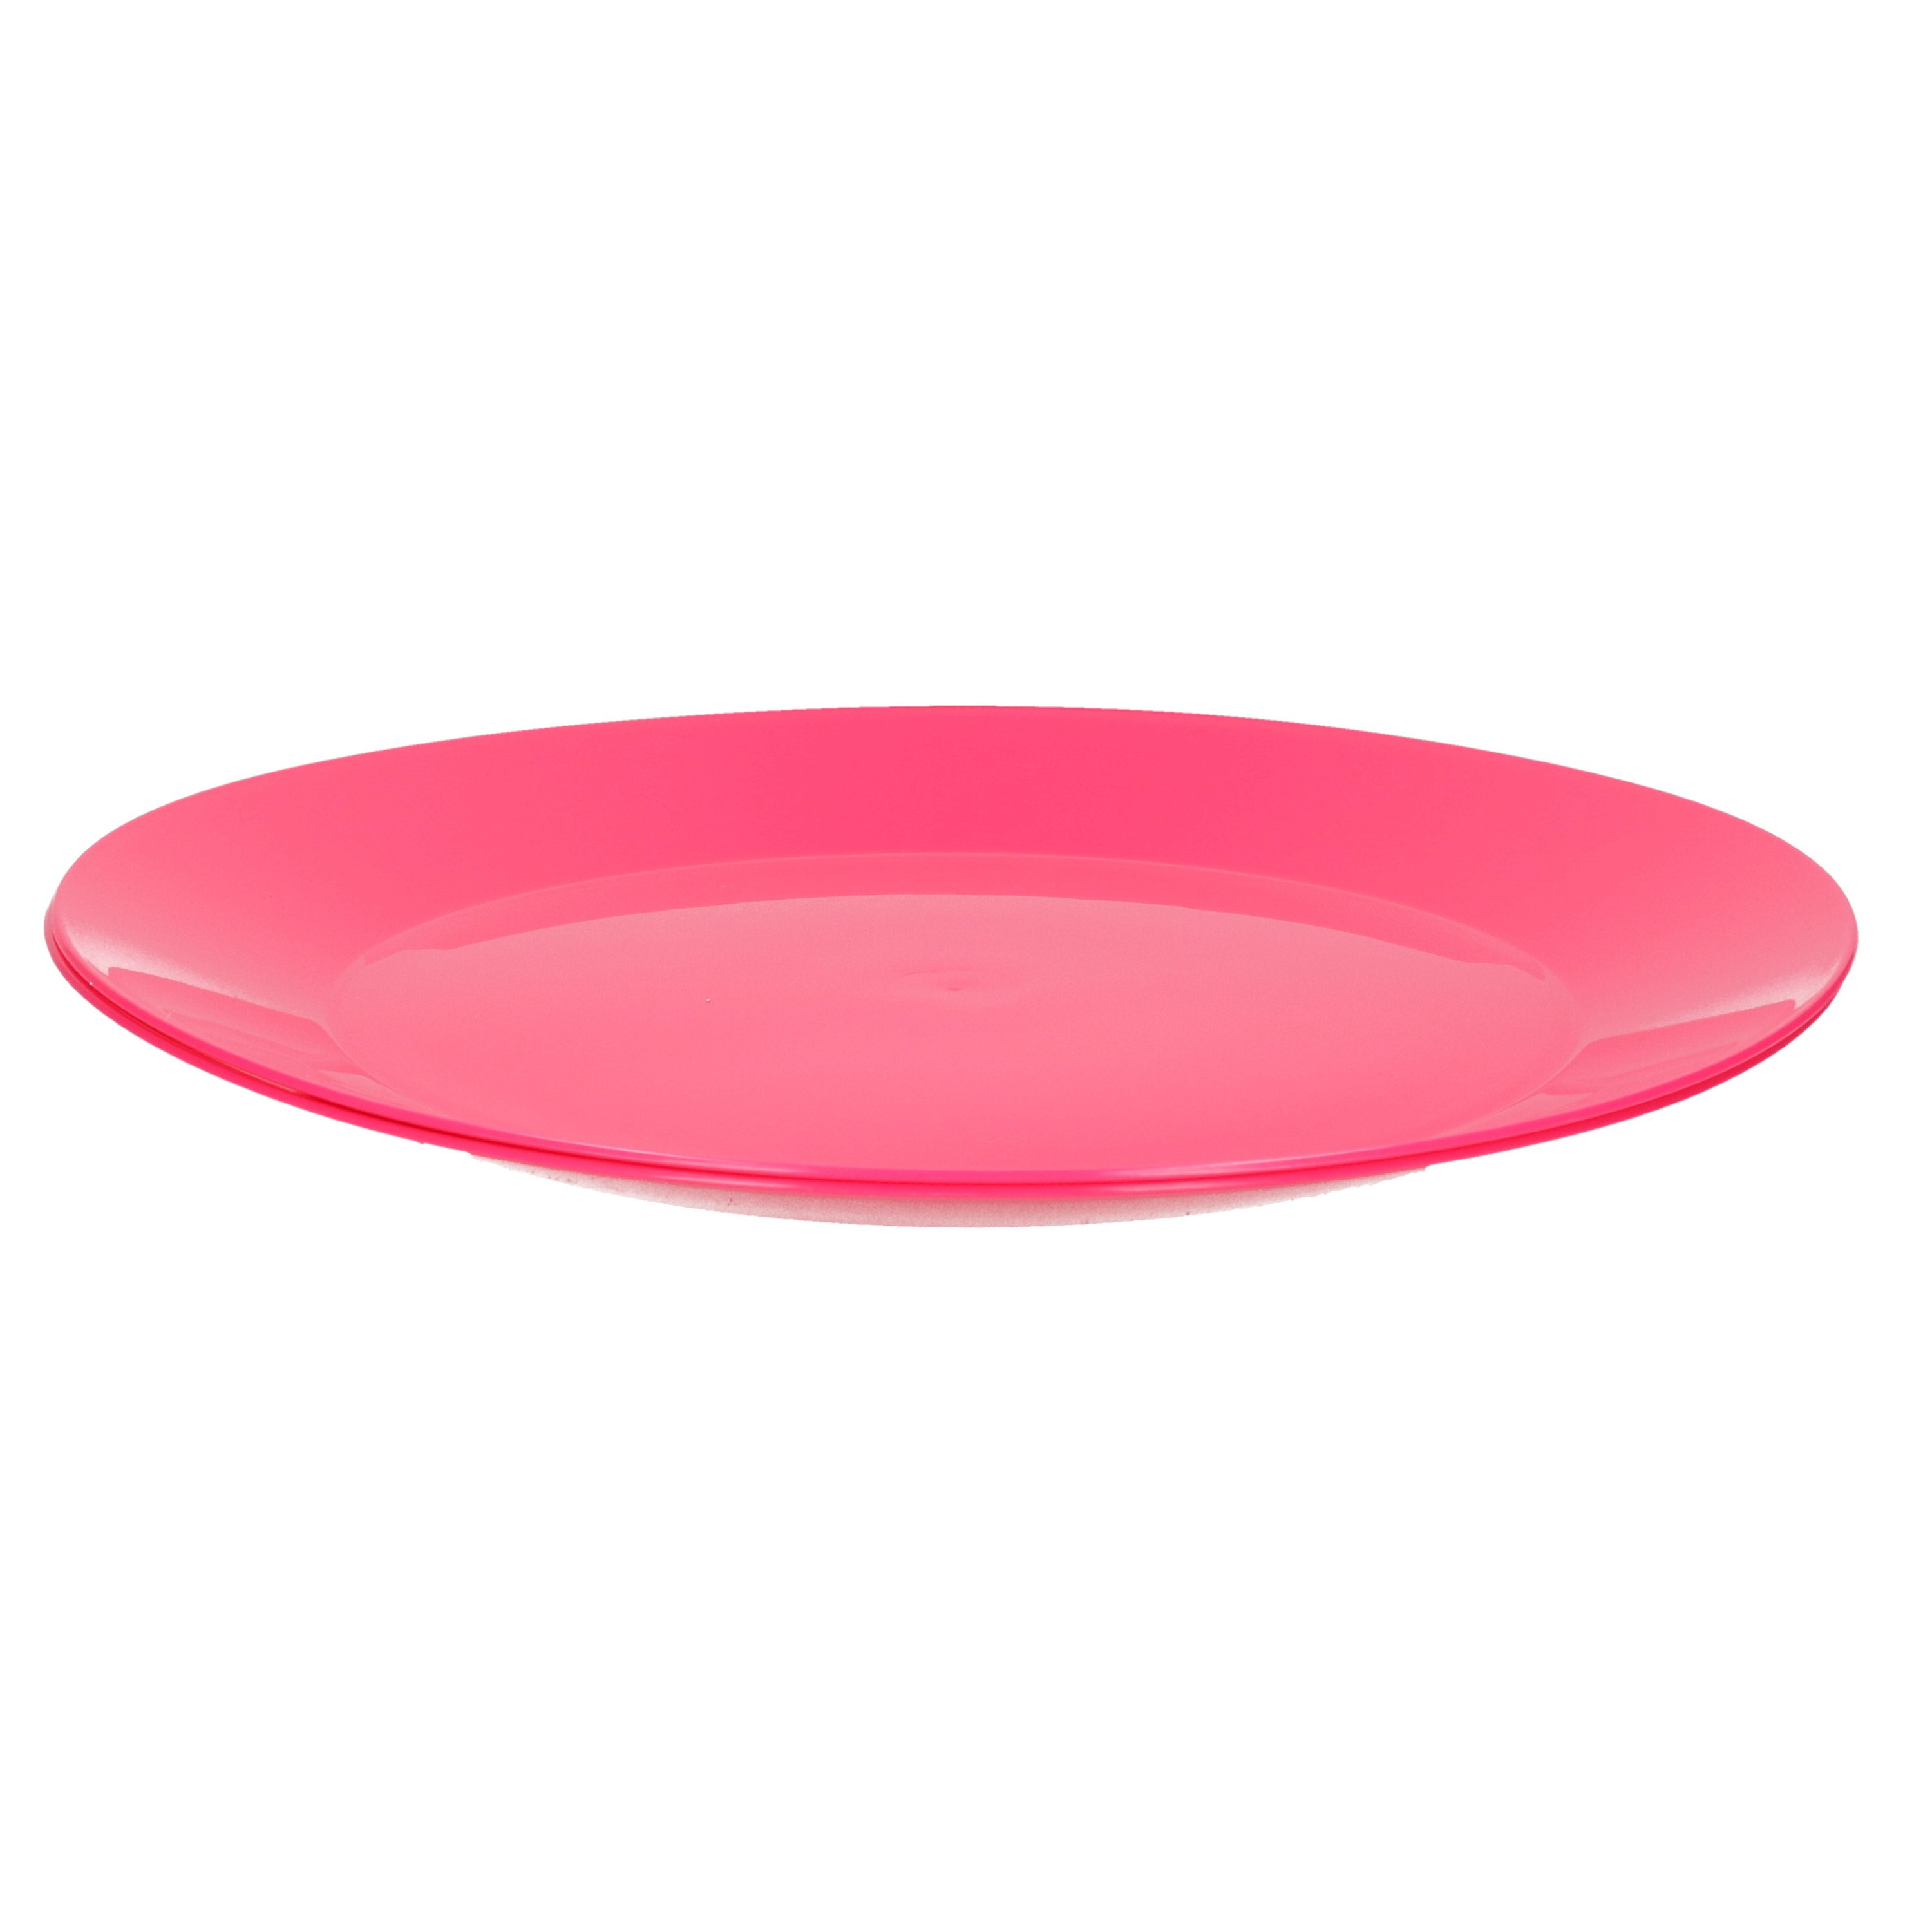 2x ontbijt-diner bordjes van hard kunststof 26 cm in het roze